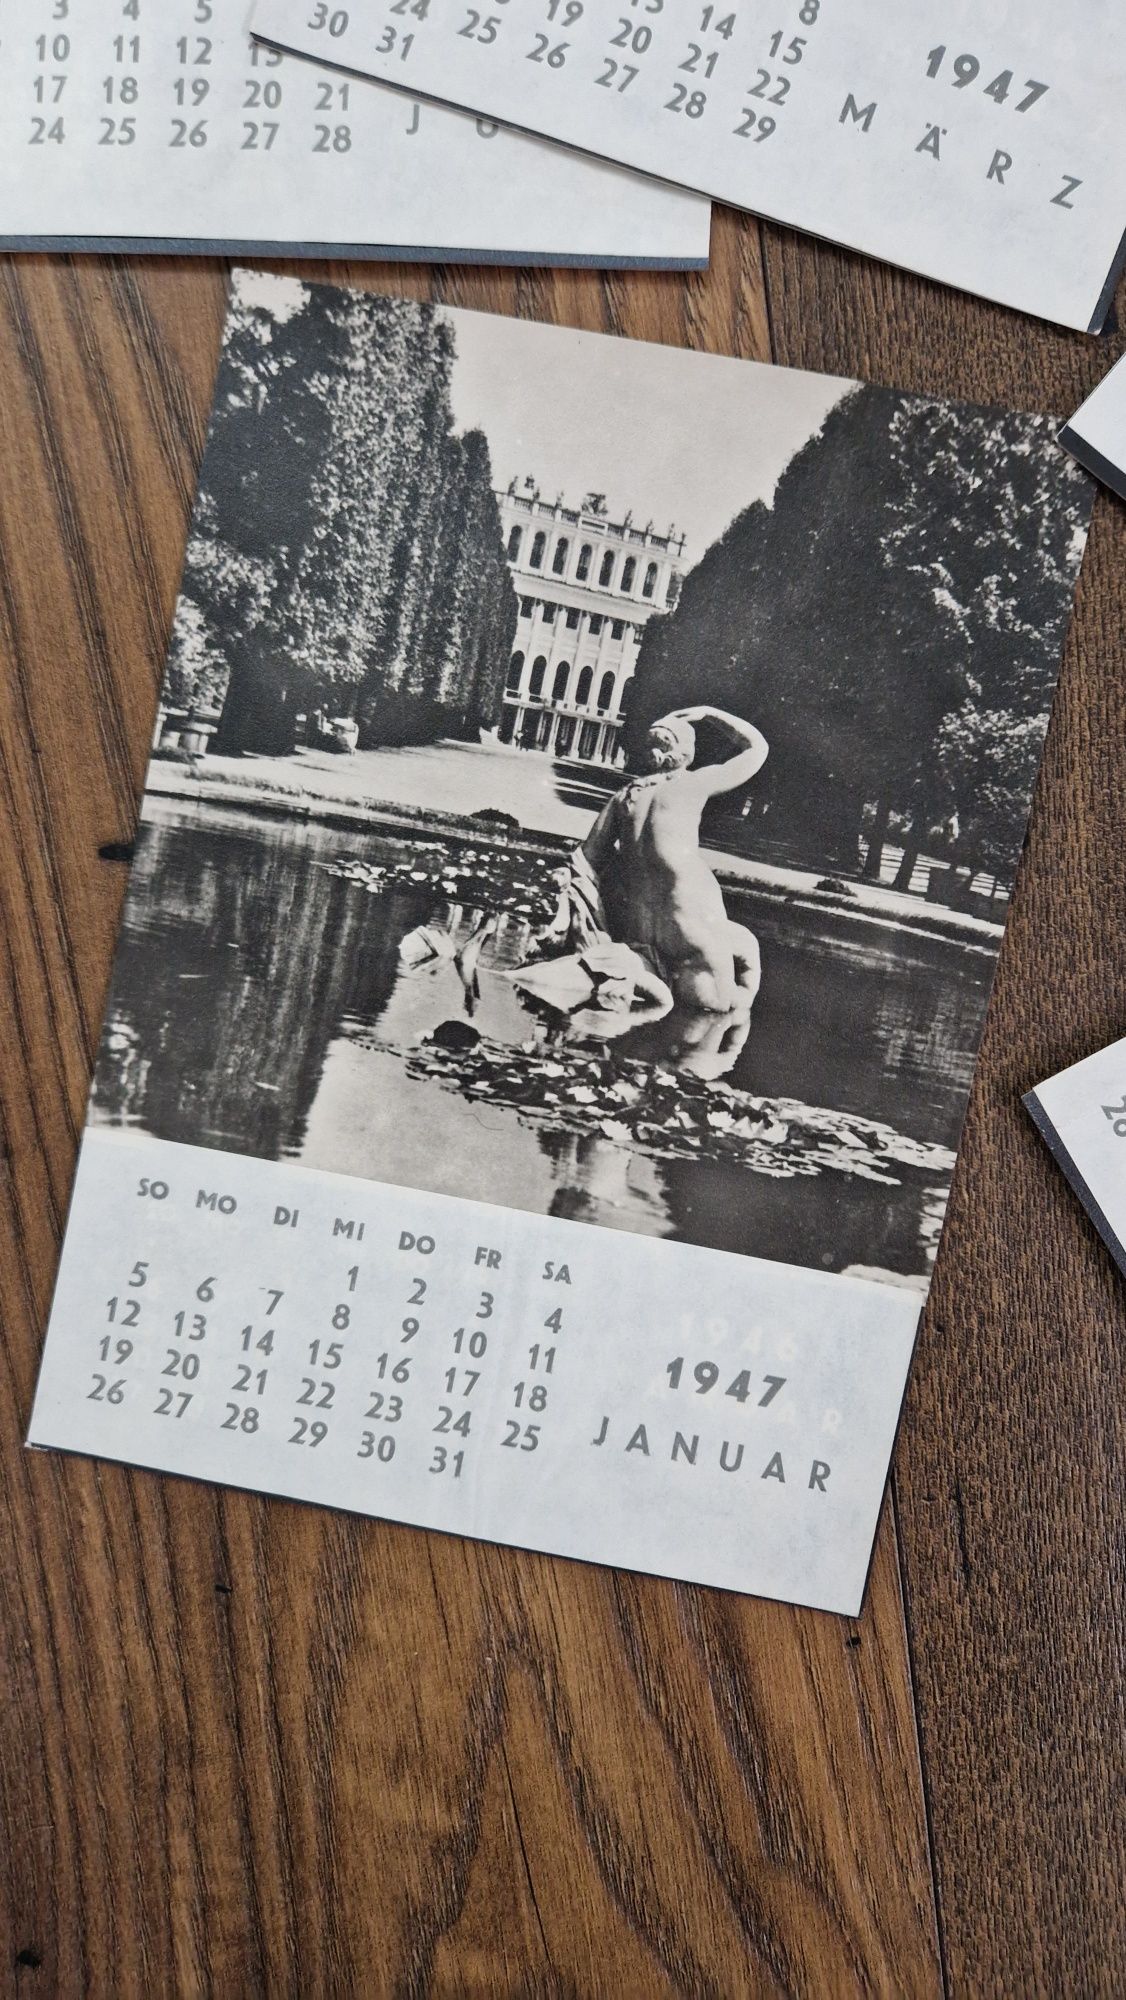 Kalendarz Austria 1947 zdjęcia